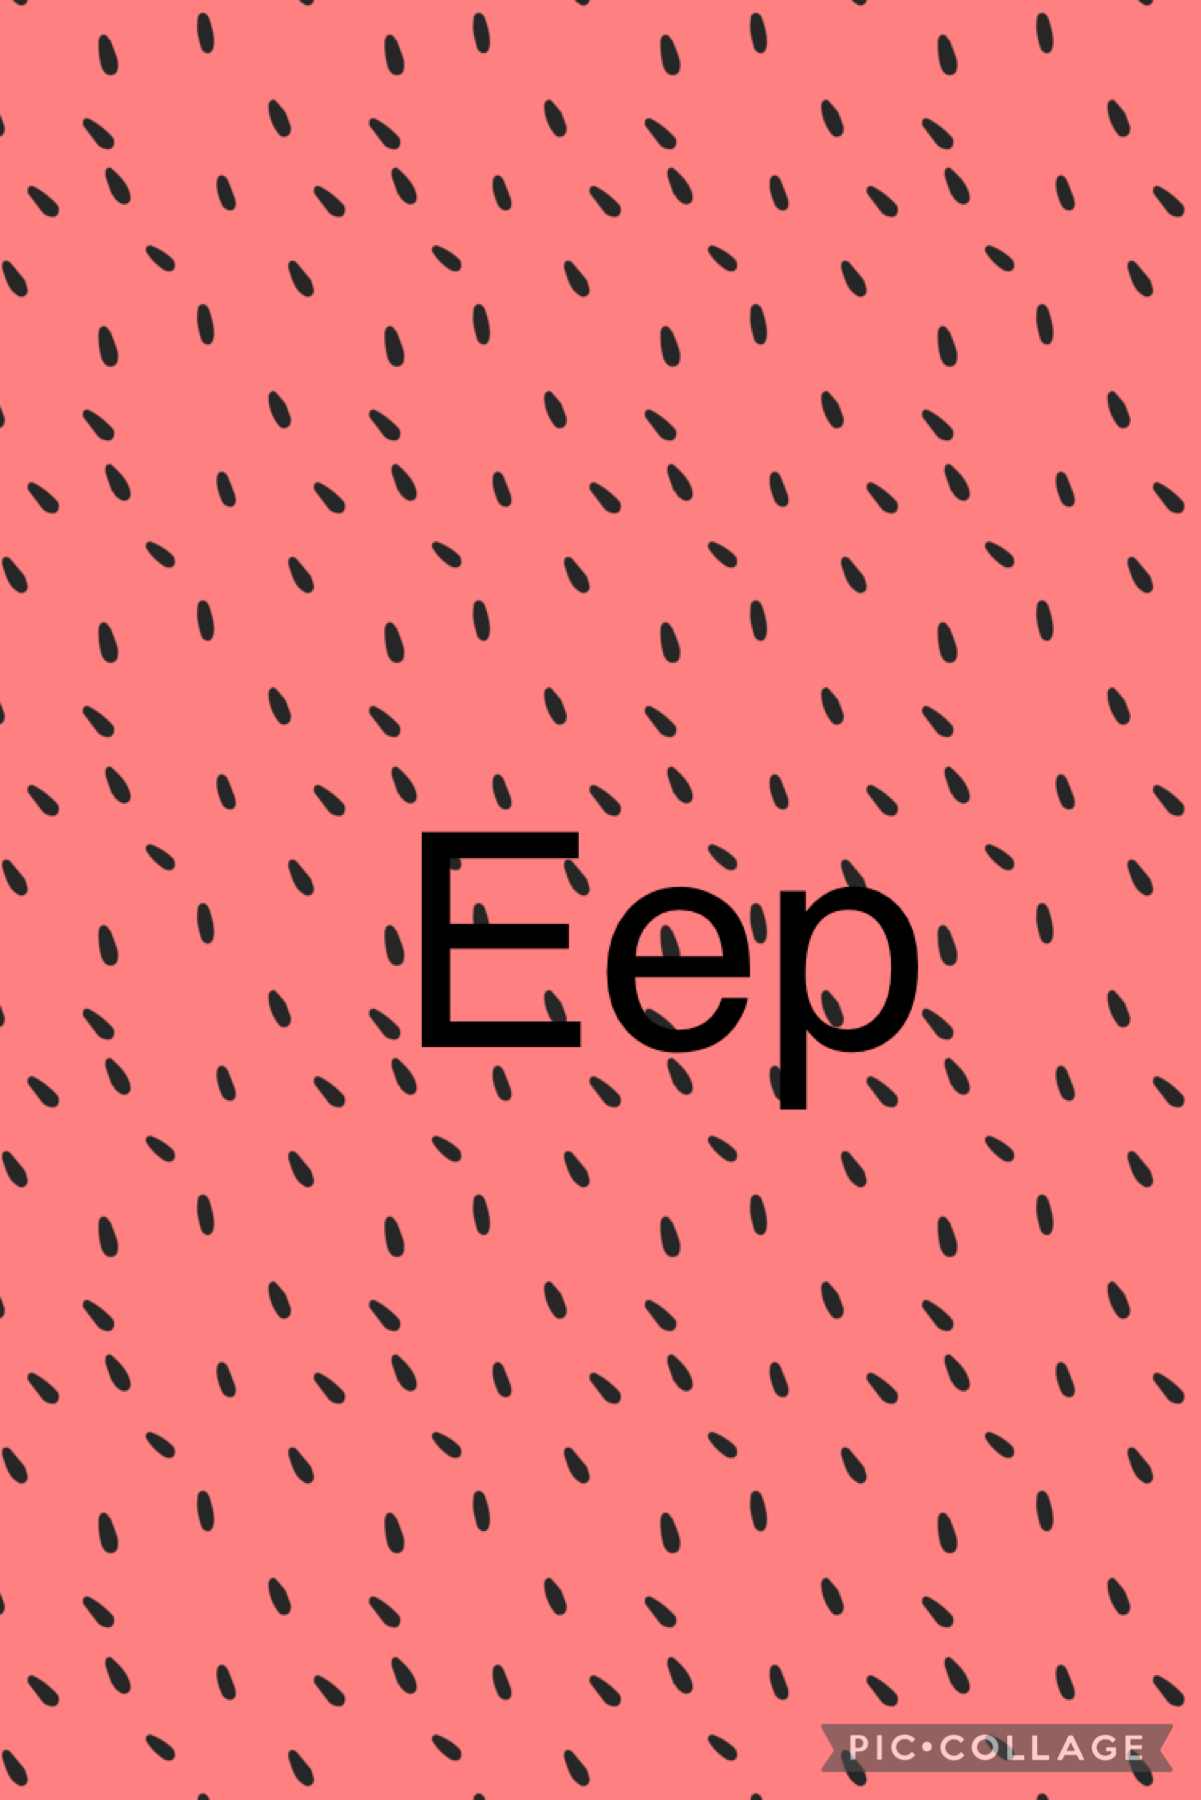 Eep